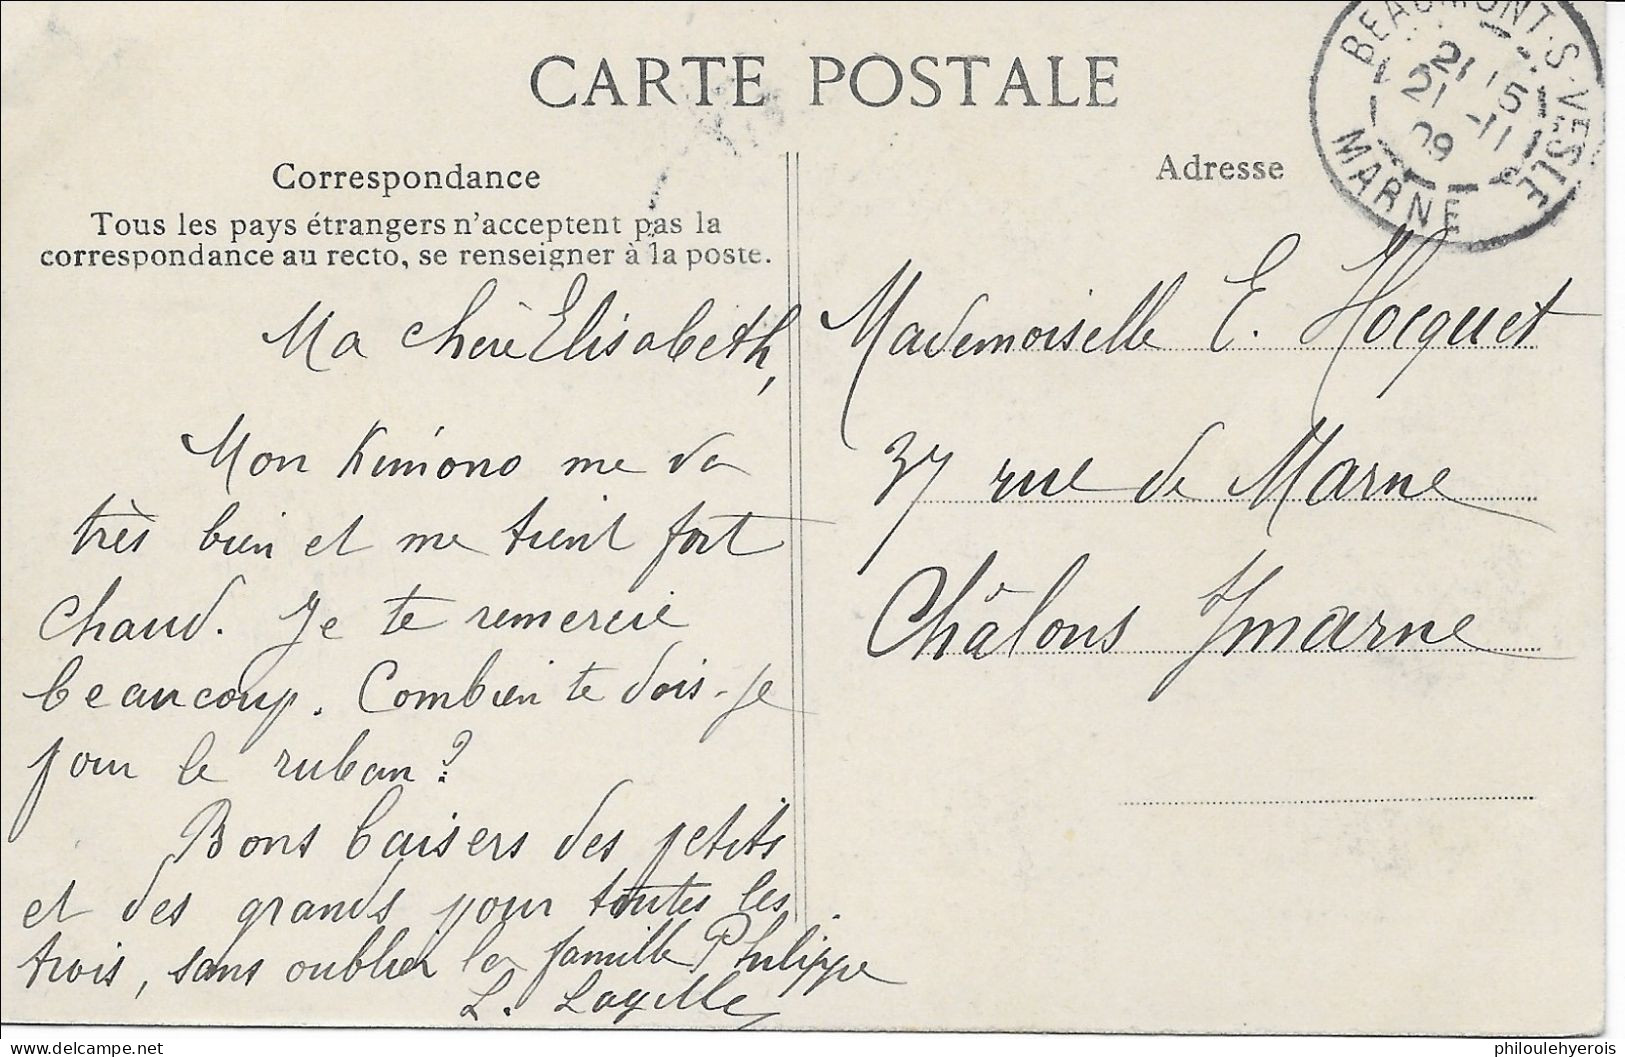 CPA GRANDE SEMAINE D'AVIATION Du 22 Au 29 Août 1909 Cachet Beaumont Sur Vesle Dans La Marne Président FALLIERES - Meetings